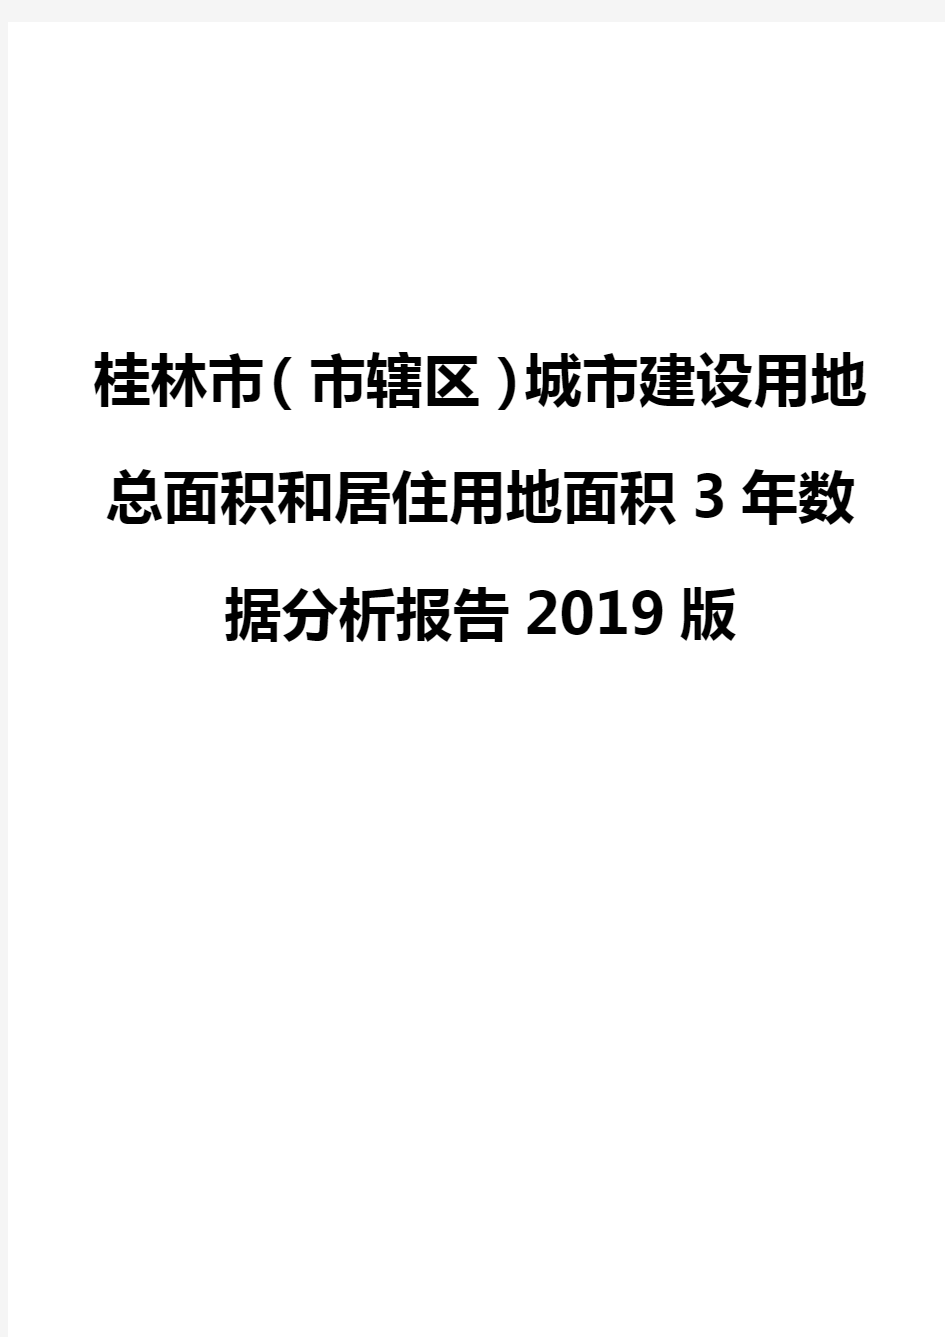 桂林市(市辖区)城市建设用地总面积和居住用地面积3年数据分析报告2019版